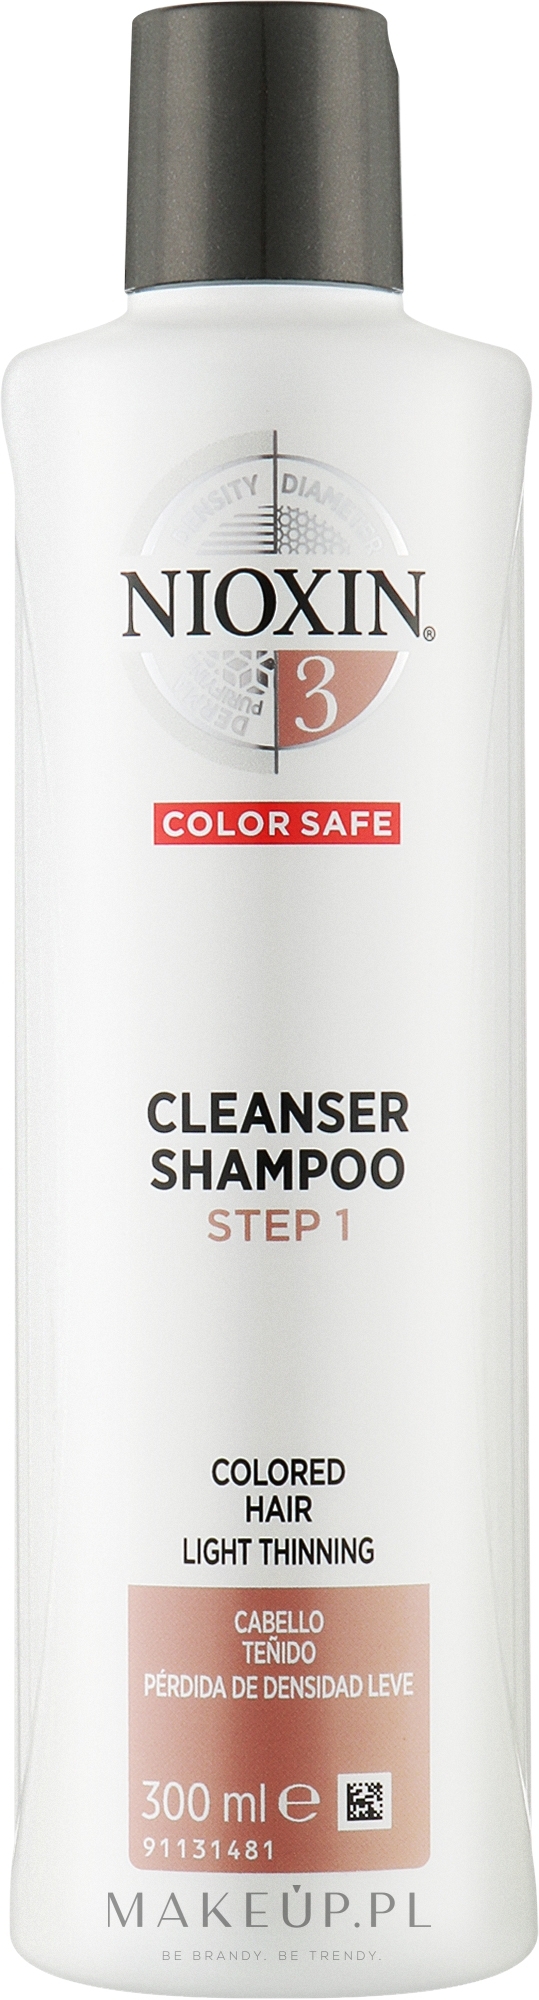 Wzmacniający szampon do skóry głowy i lekko przerzedzających się włosów farbowanych - Nioxin System 3 Cleanser Shampoo Step 1 Colored Hair Light Thinning — Zdjęcie 300 ml